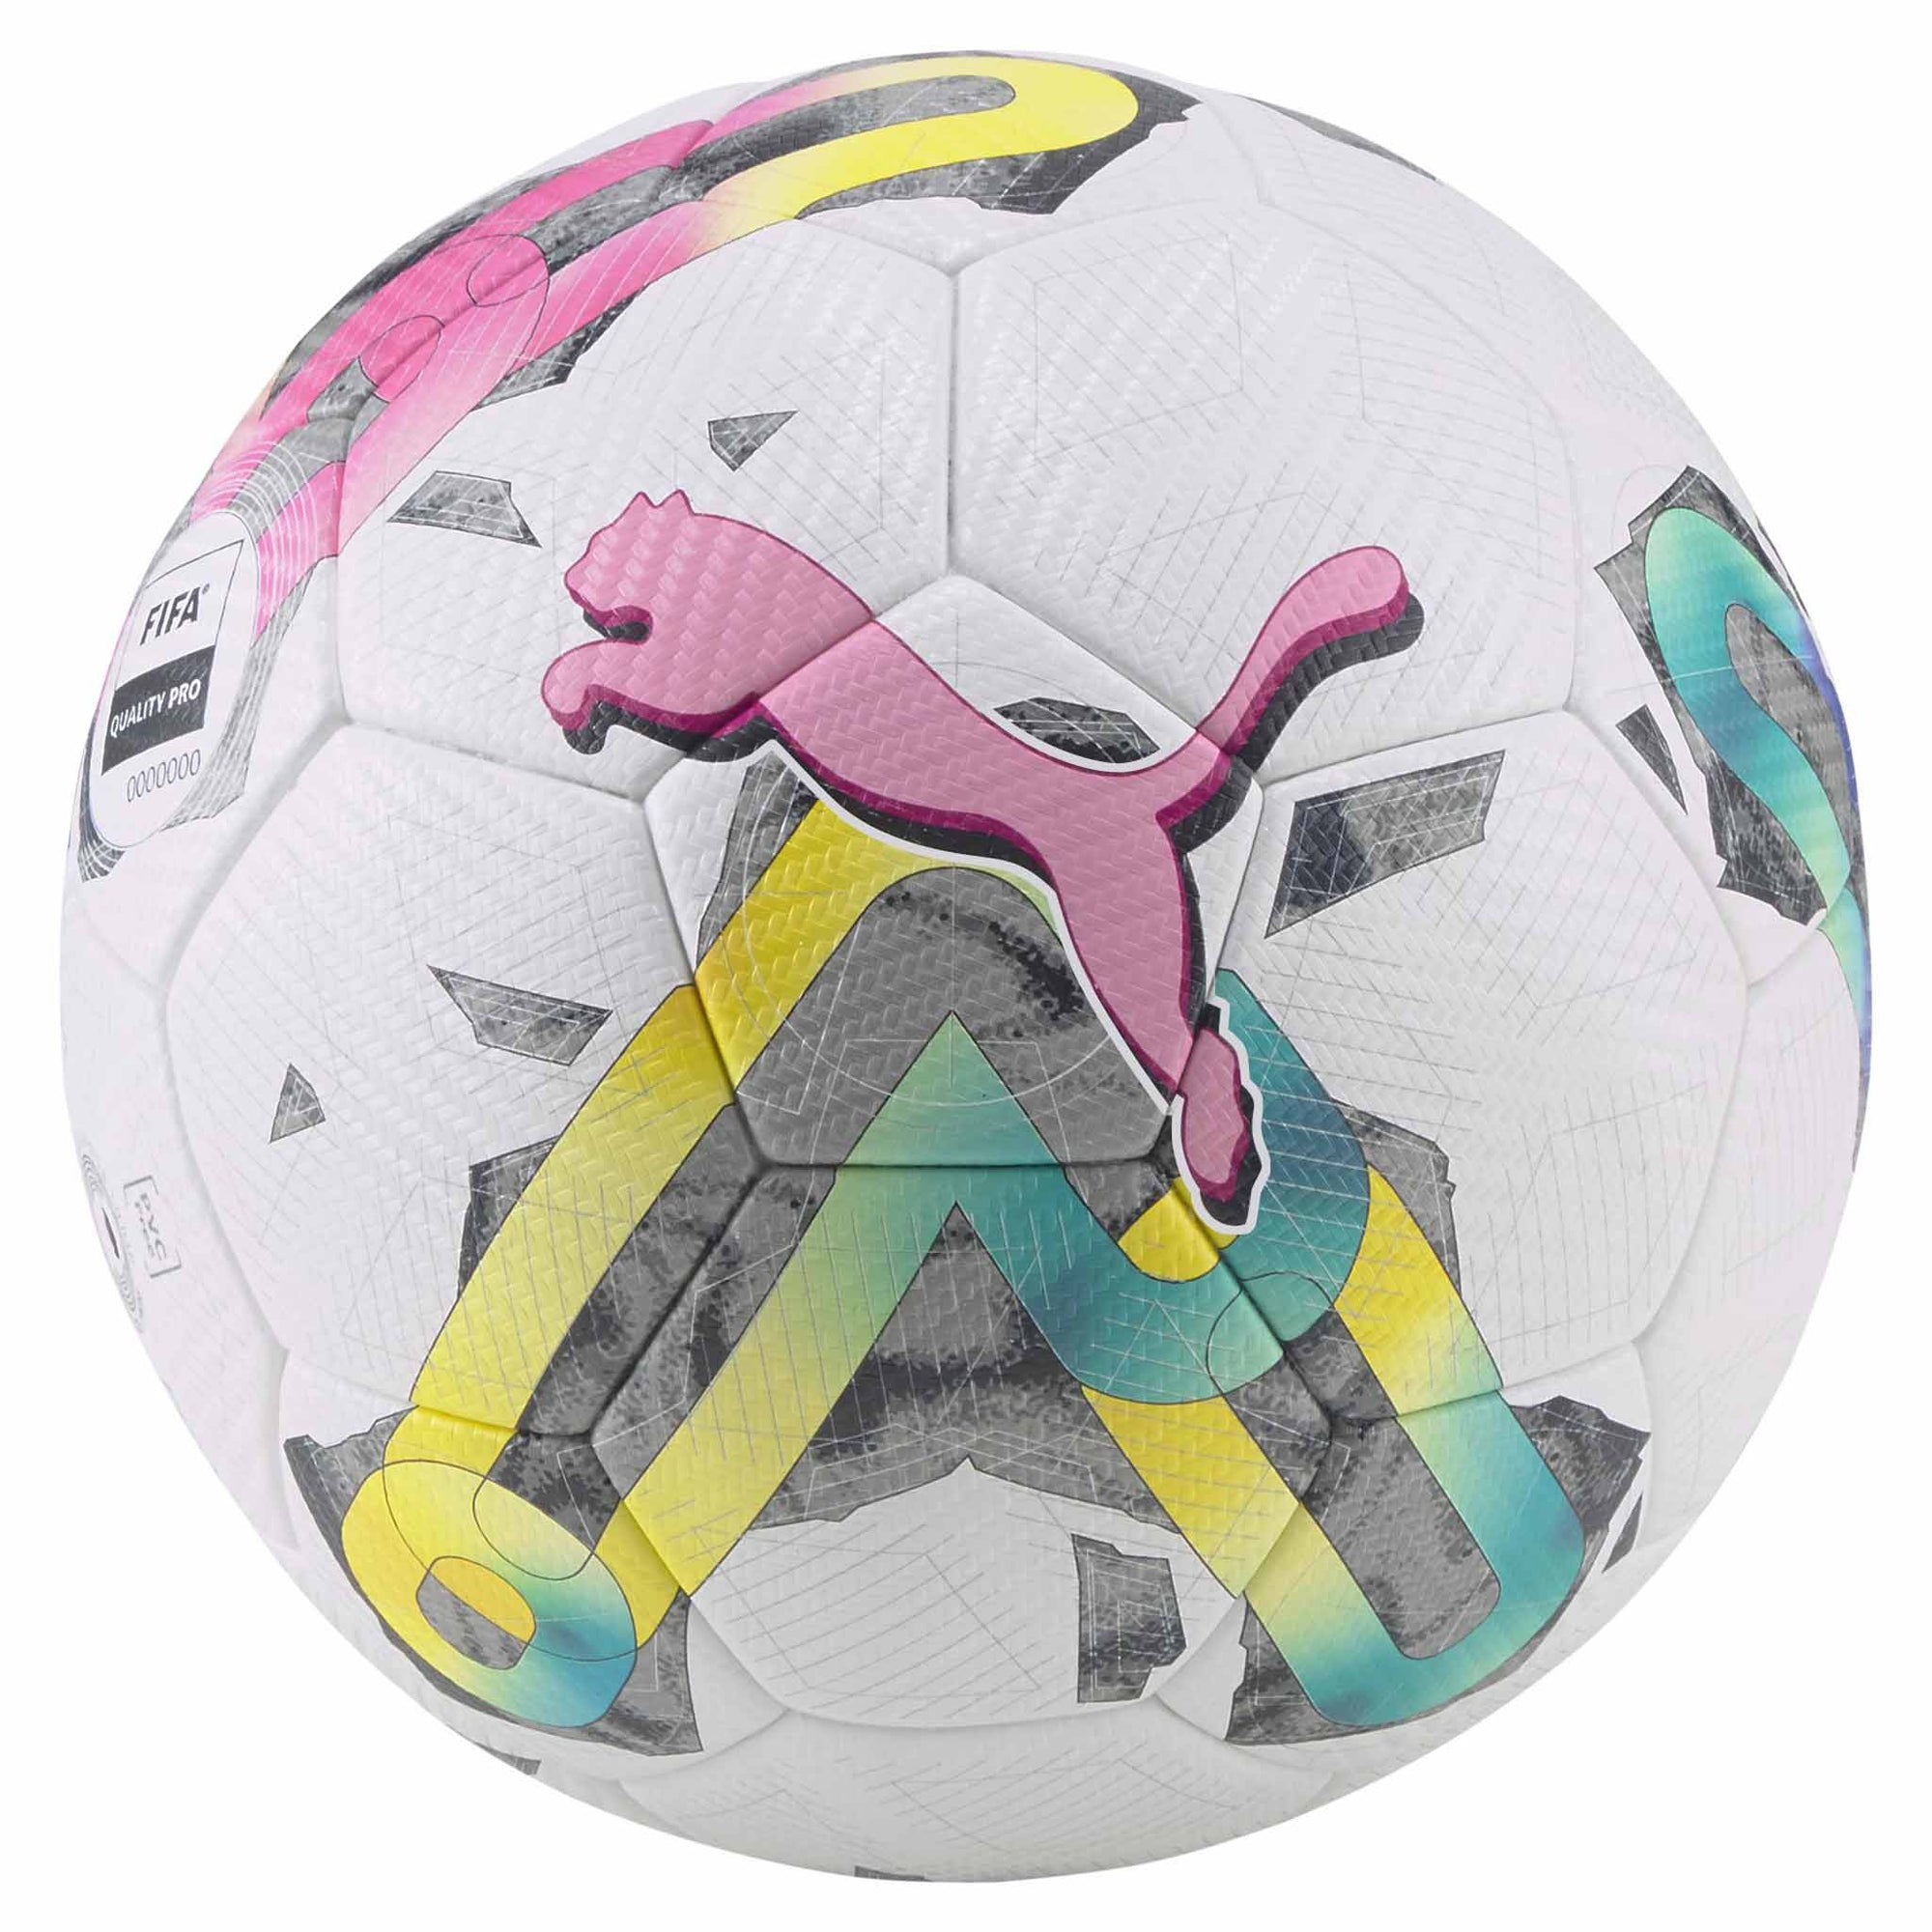 Ballon de soccer de match Puma Orbita 2 TB FIFA Quality blanc rose